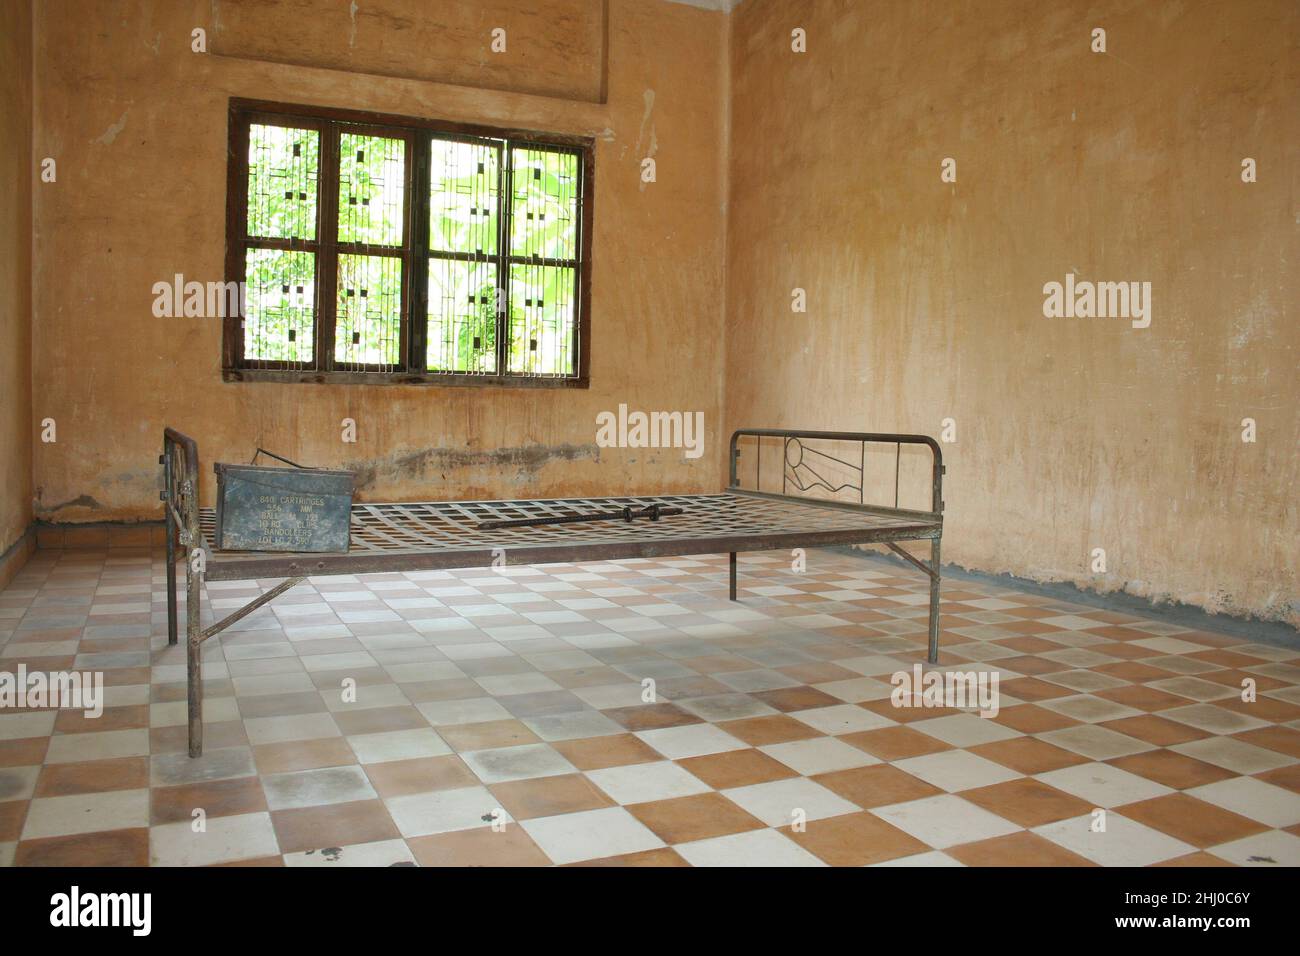 Phnom Penh, Cambodge - juillet 16 2006 : cellule de prison avec son lit métallique vide dans l'ancienne école secondaire qui a été utilisée comme prison de sécurité 21 (S-21). Banque D'Images